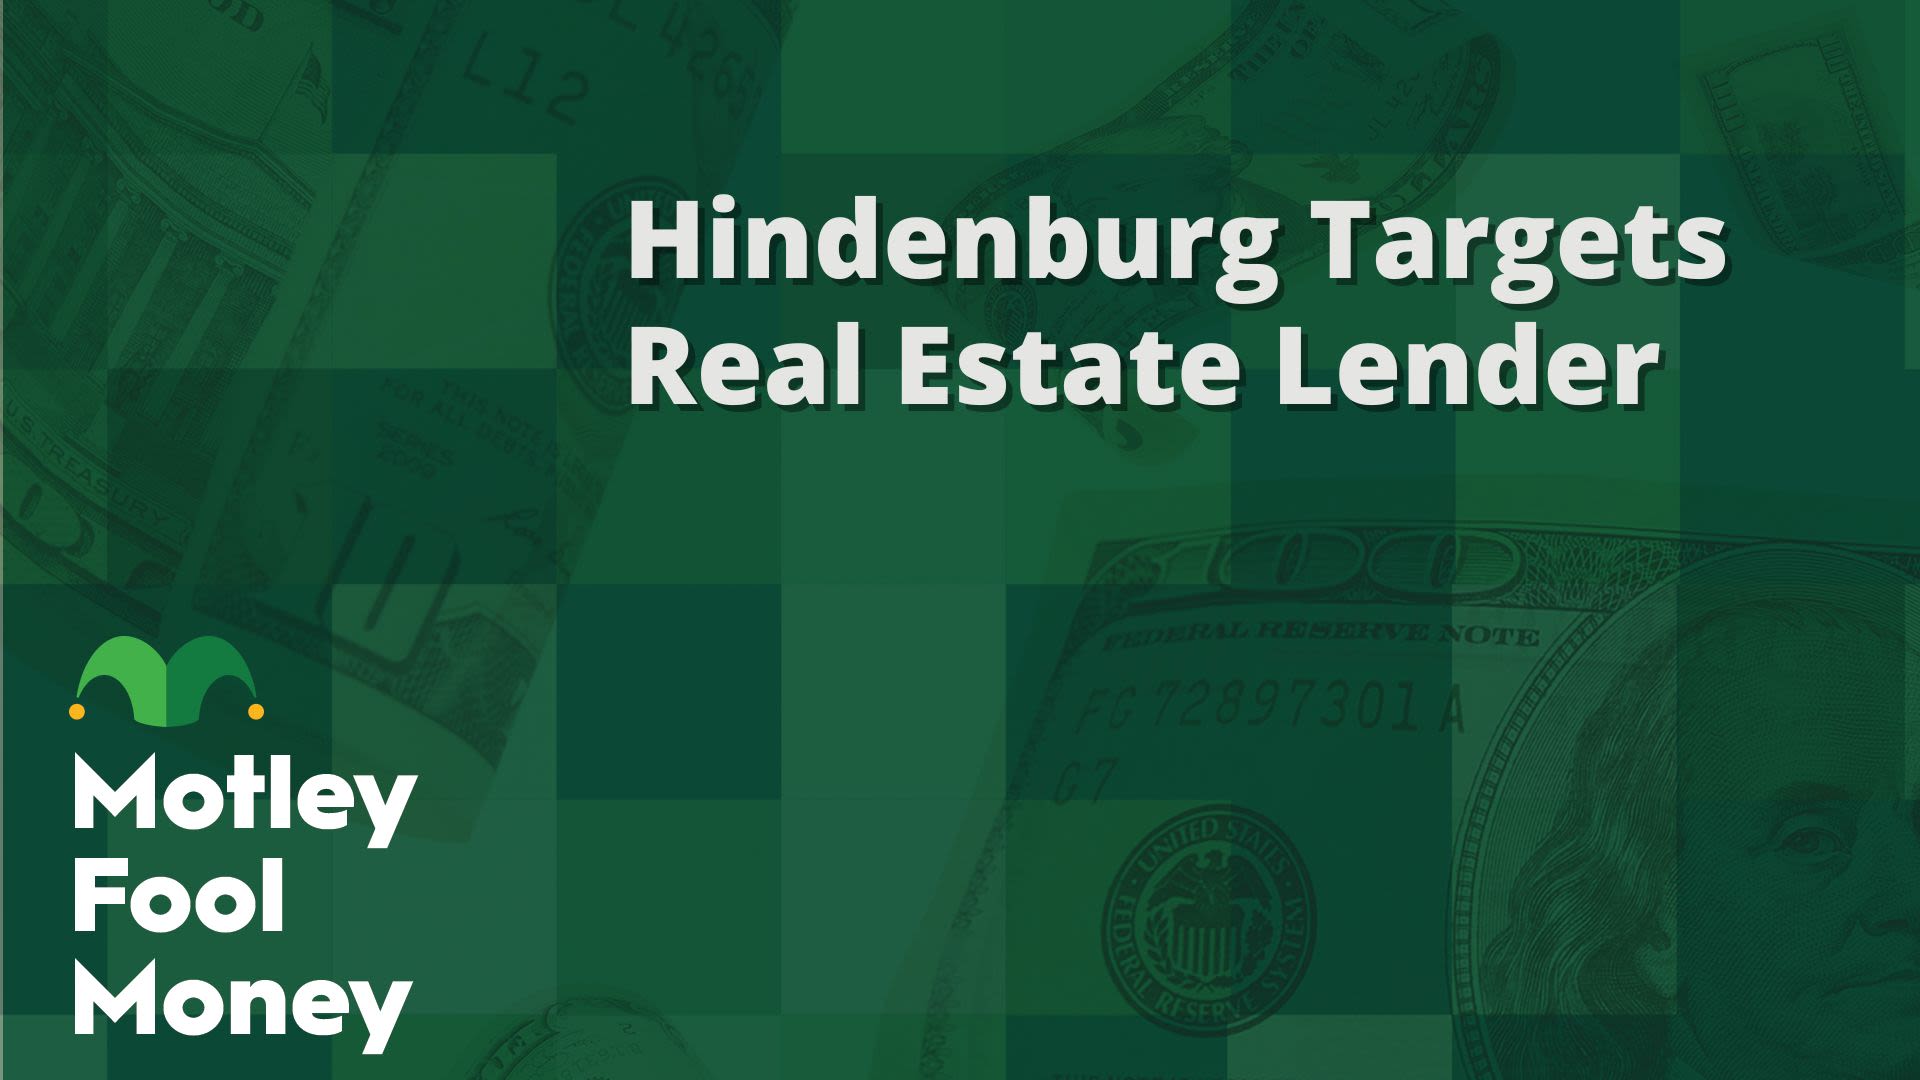 Hindenburg Targets Real Estate Lender